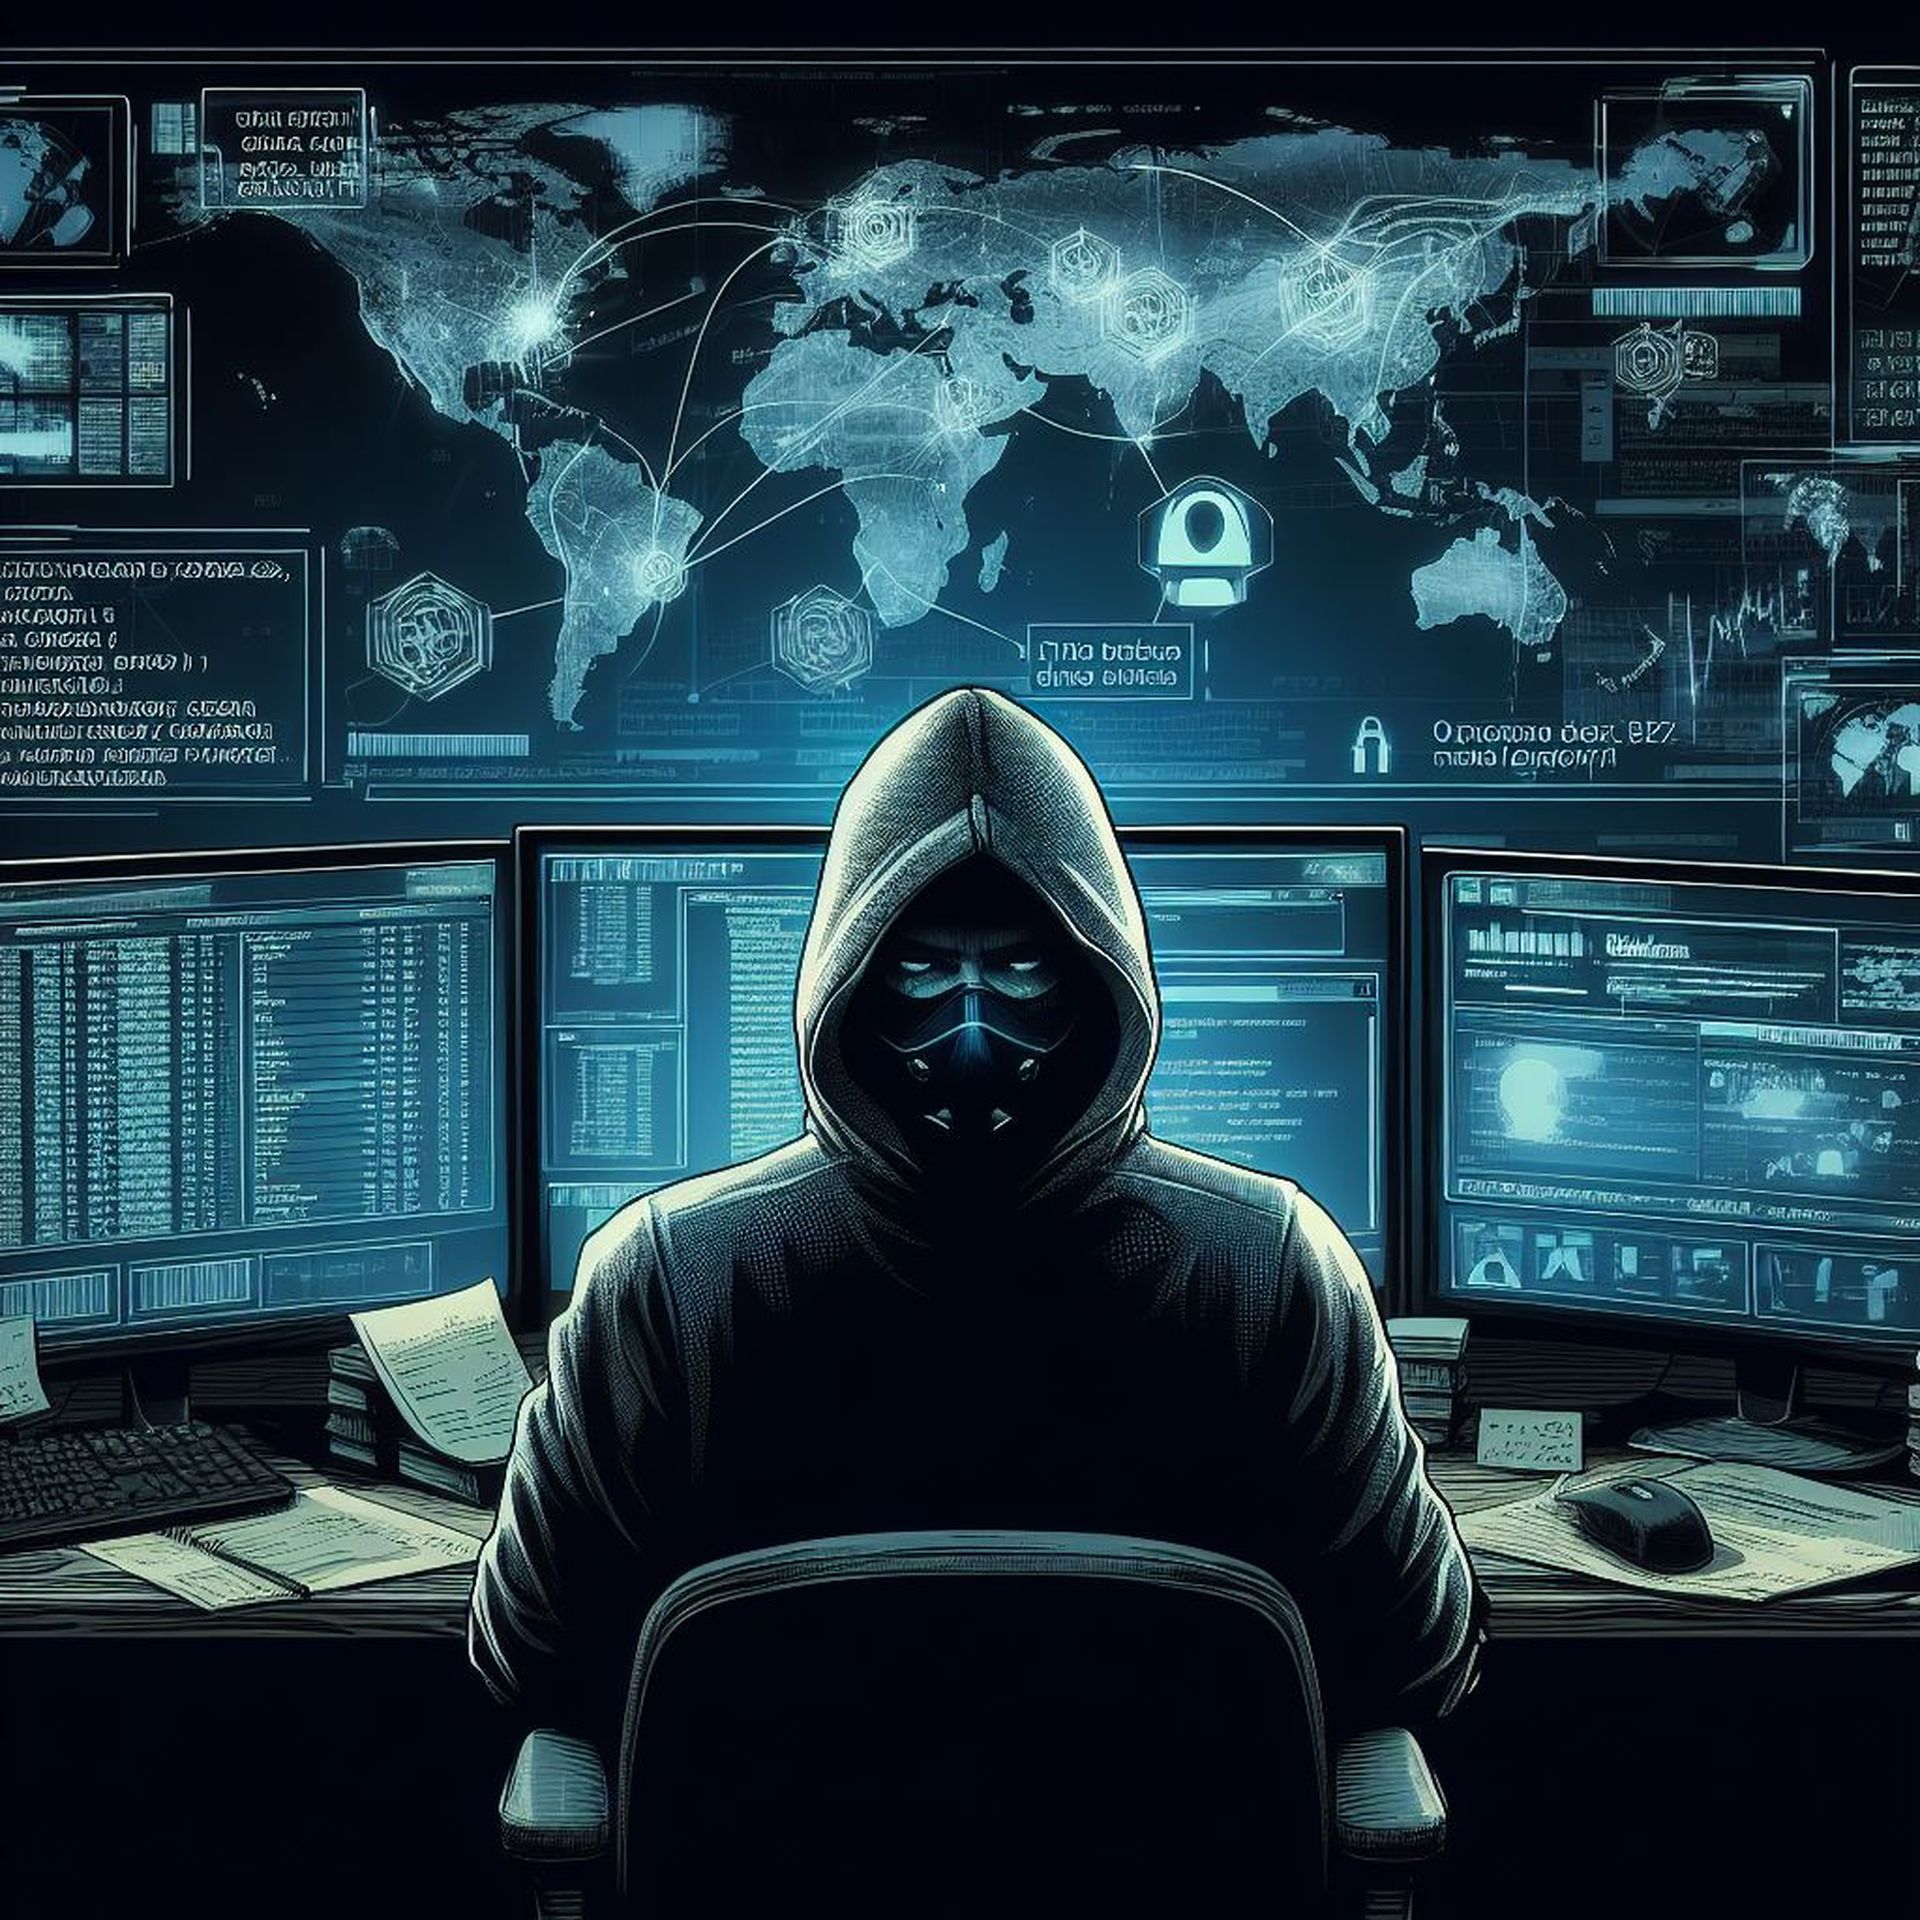 Revelando o suposto ataque cibernético de hackers chineses à infraestrutura crítica dos EUA. Explore ameaças patrocinadas pelo estado, preocupações do FBI e muito mais